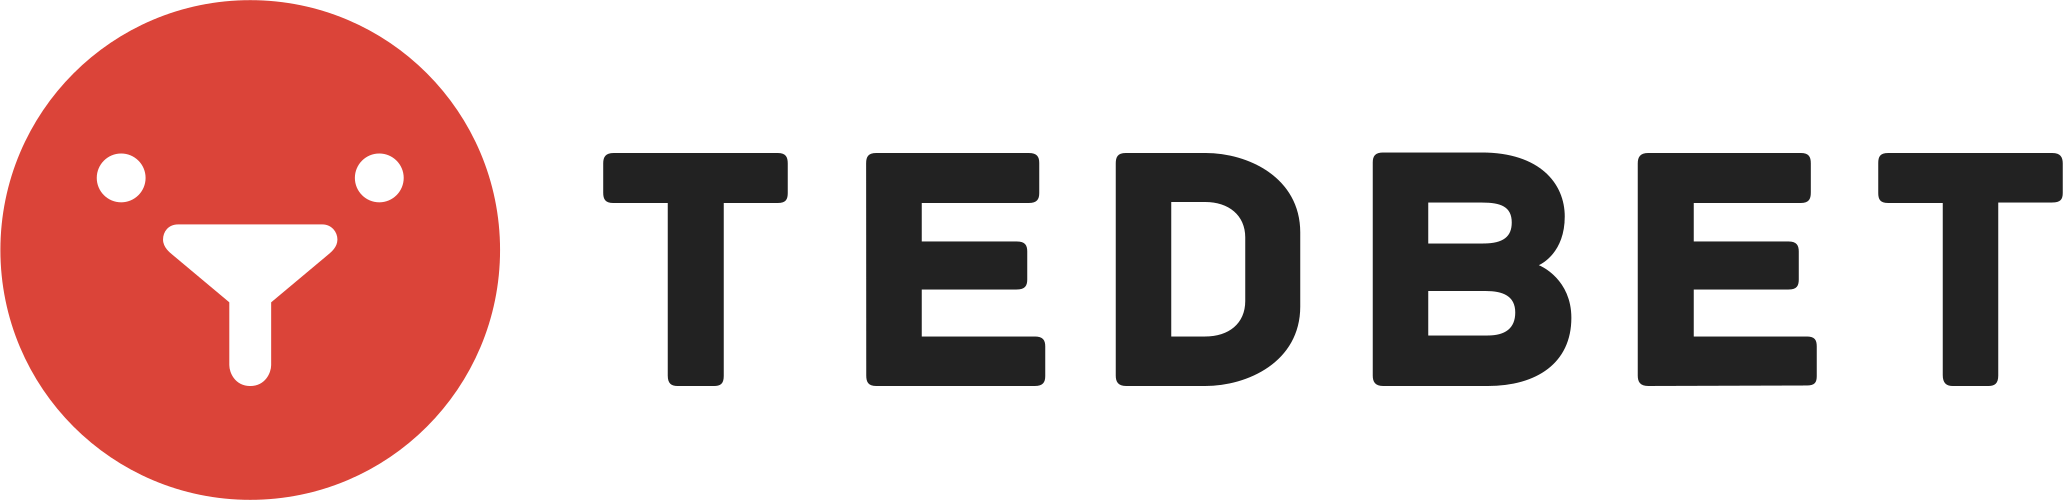 Tedbet（テットベット）カジノレビュー